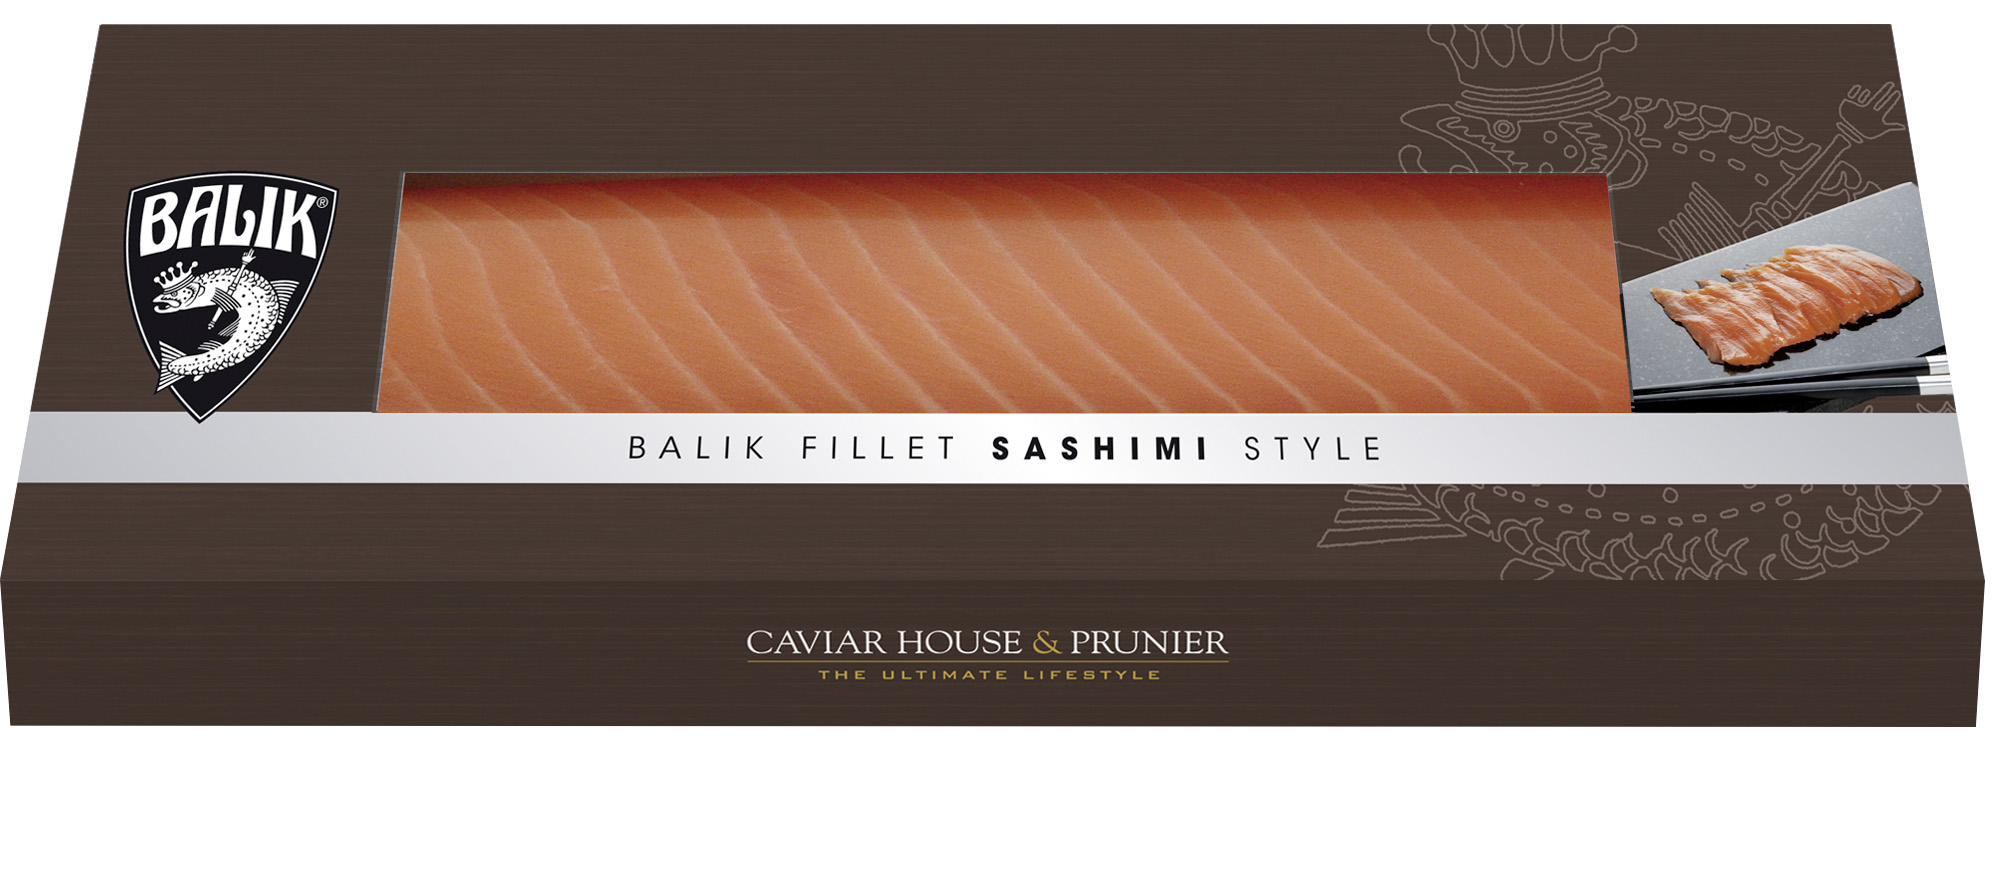 Balik Fillet Sashimi Style, 350 Gramm